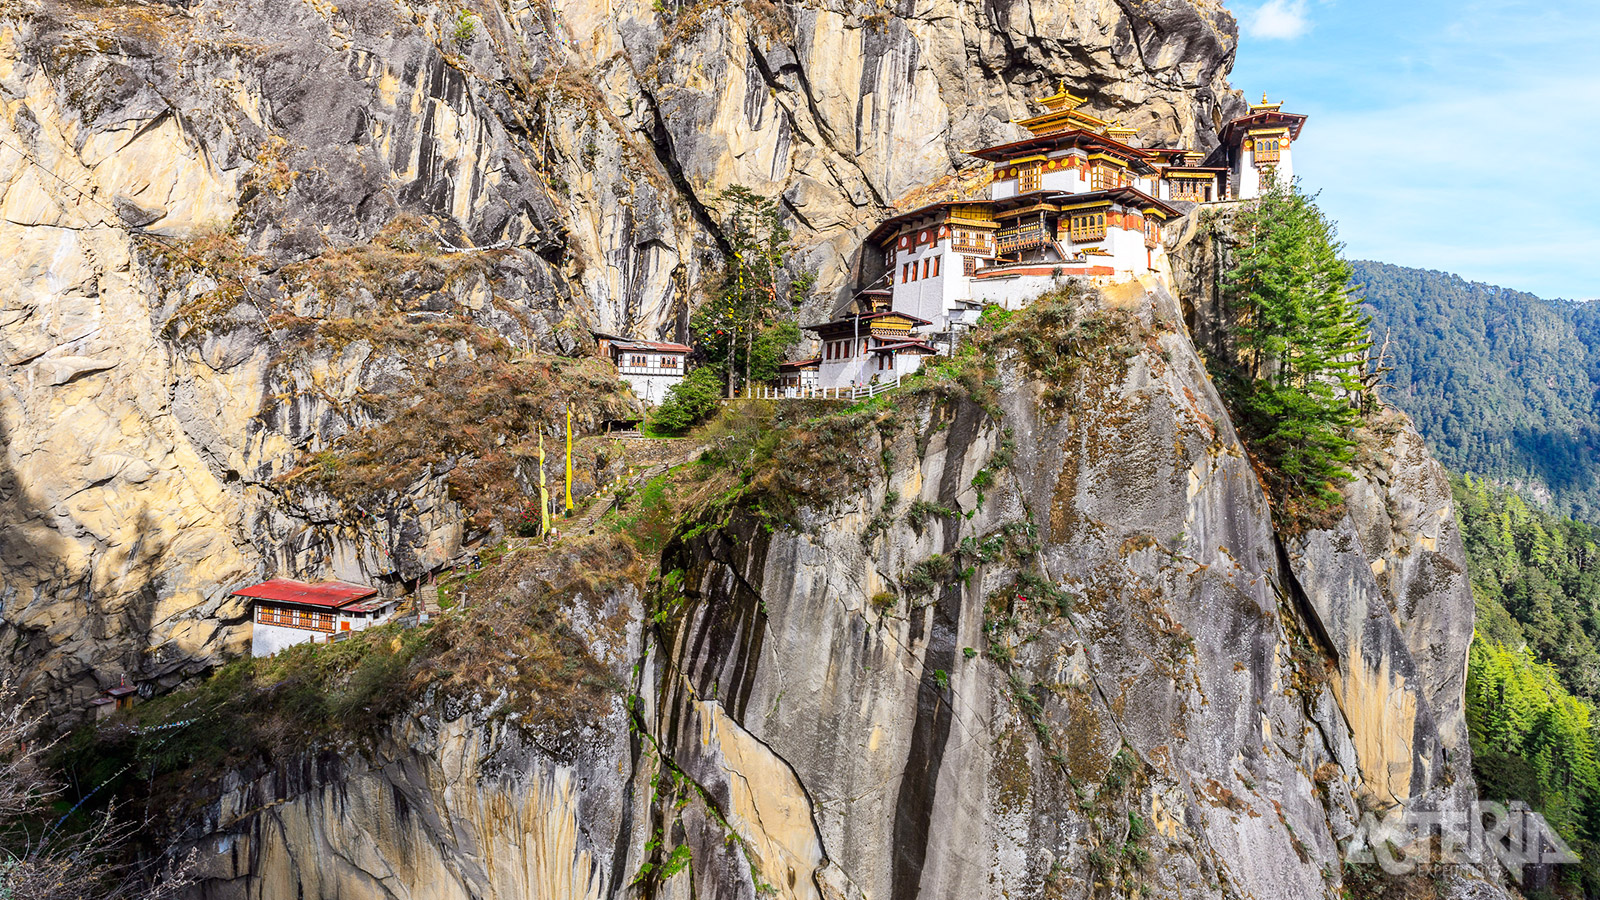 Het Taktshang-klooster werd gebouwd tegen een steile rots, 900m boven de Paro-vallei